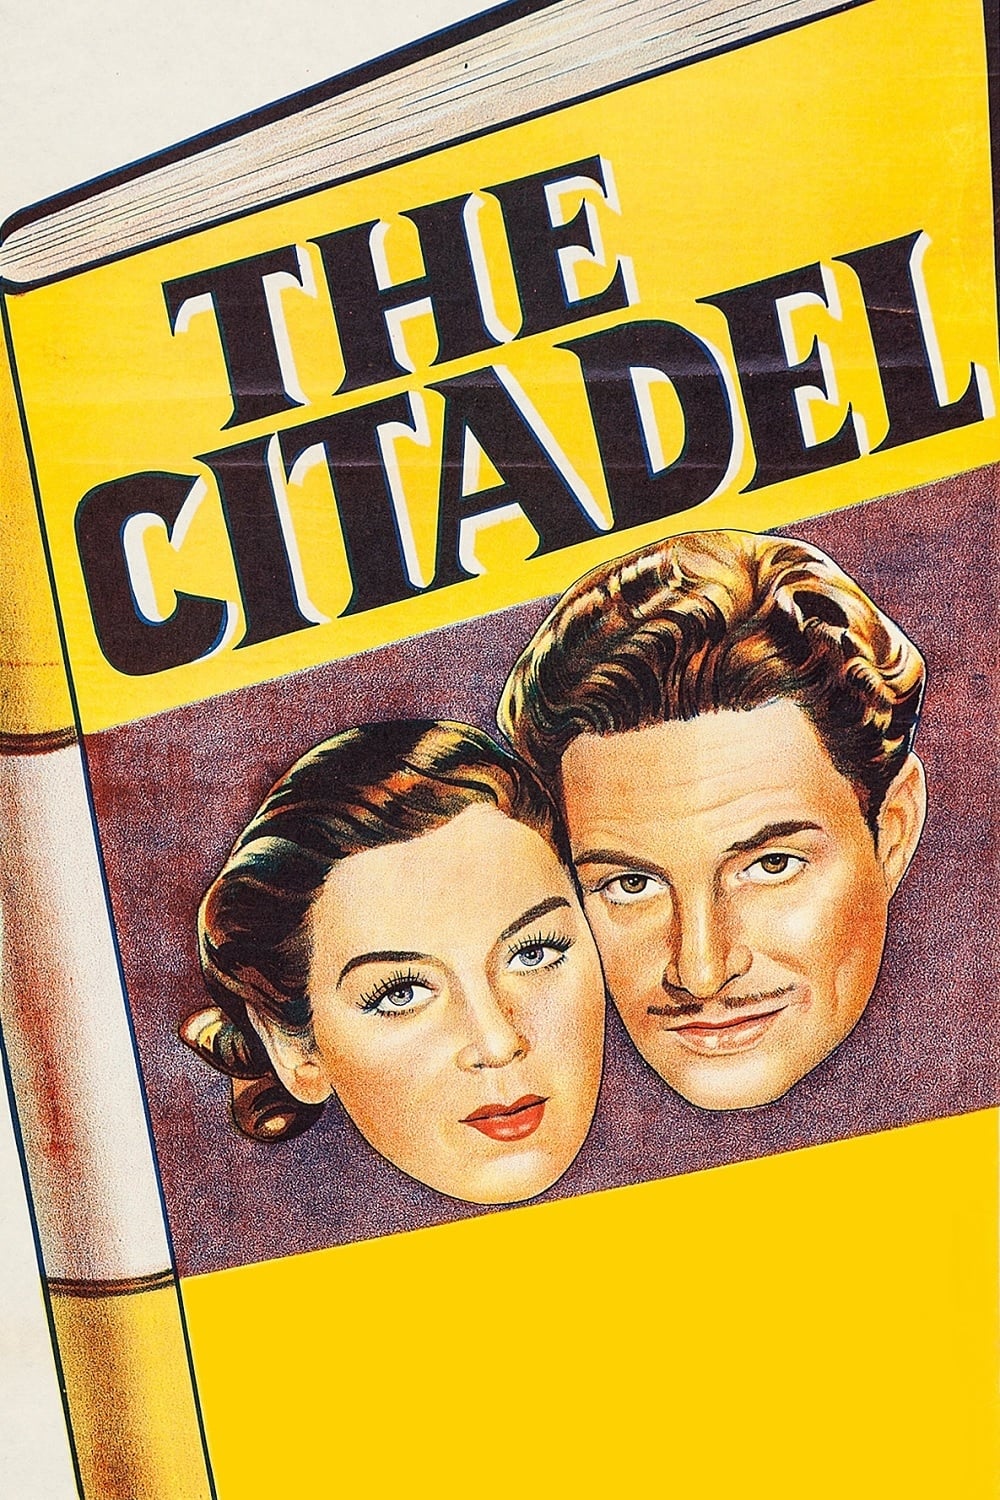 The Citadel (1938)